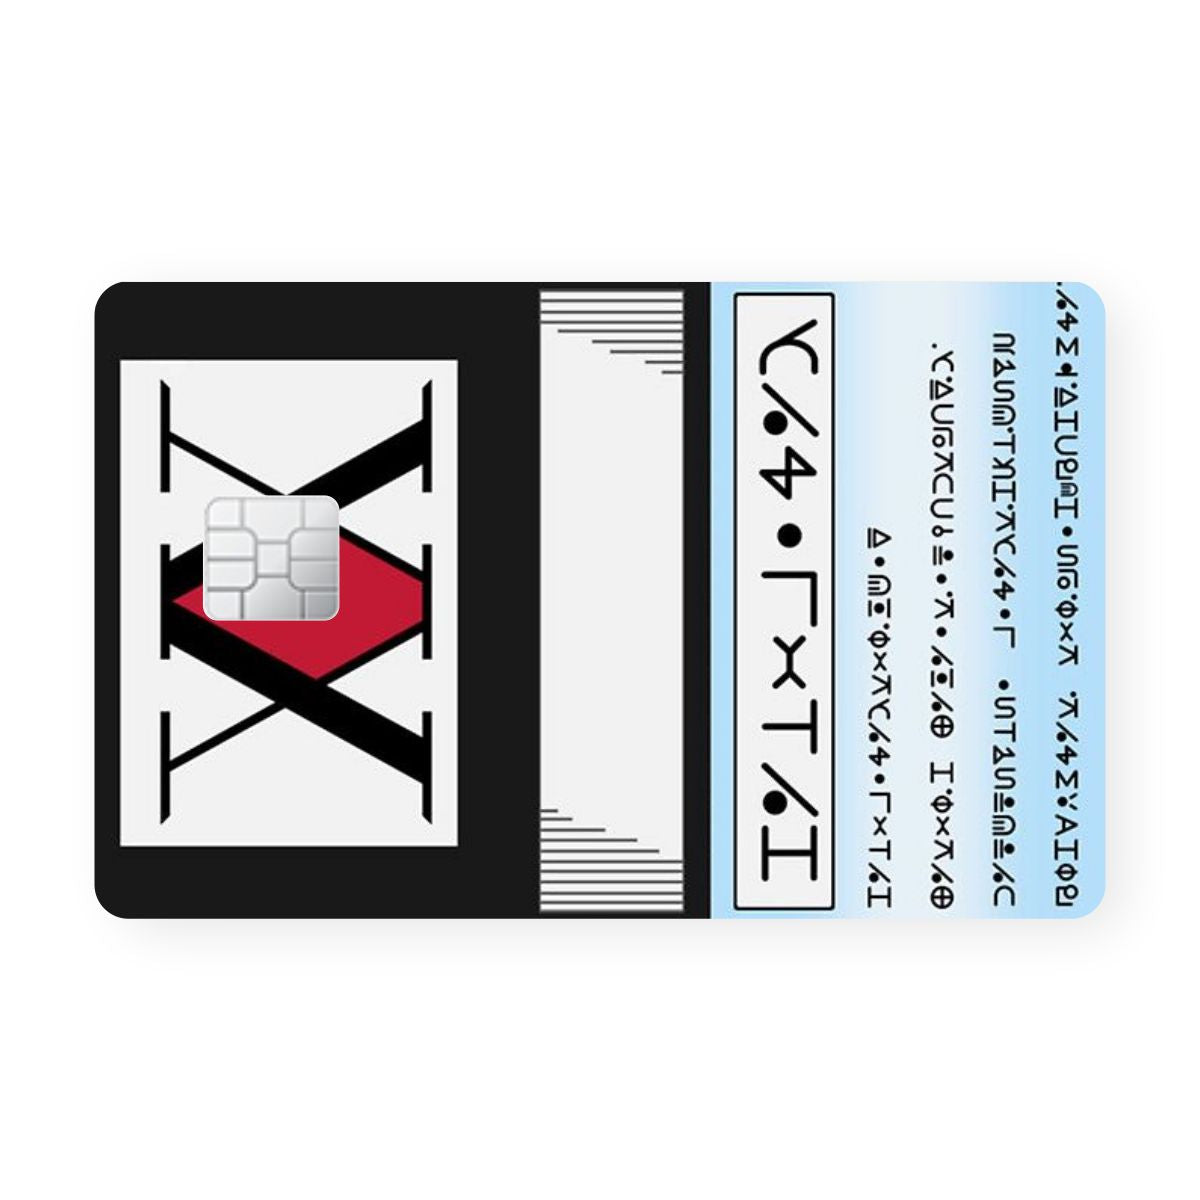 Acrylic Wolf Debit Card Skin & Card Skin. Anime Debit Card Skins. –  WrapCart Skins